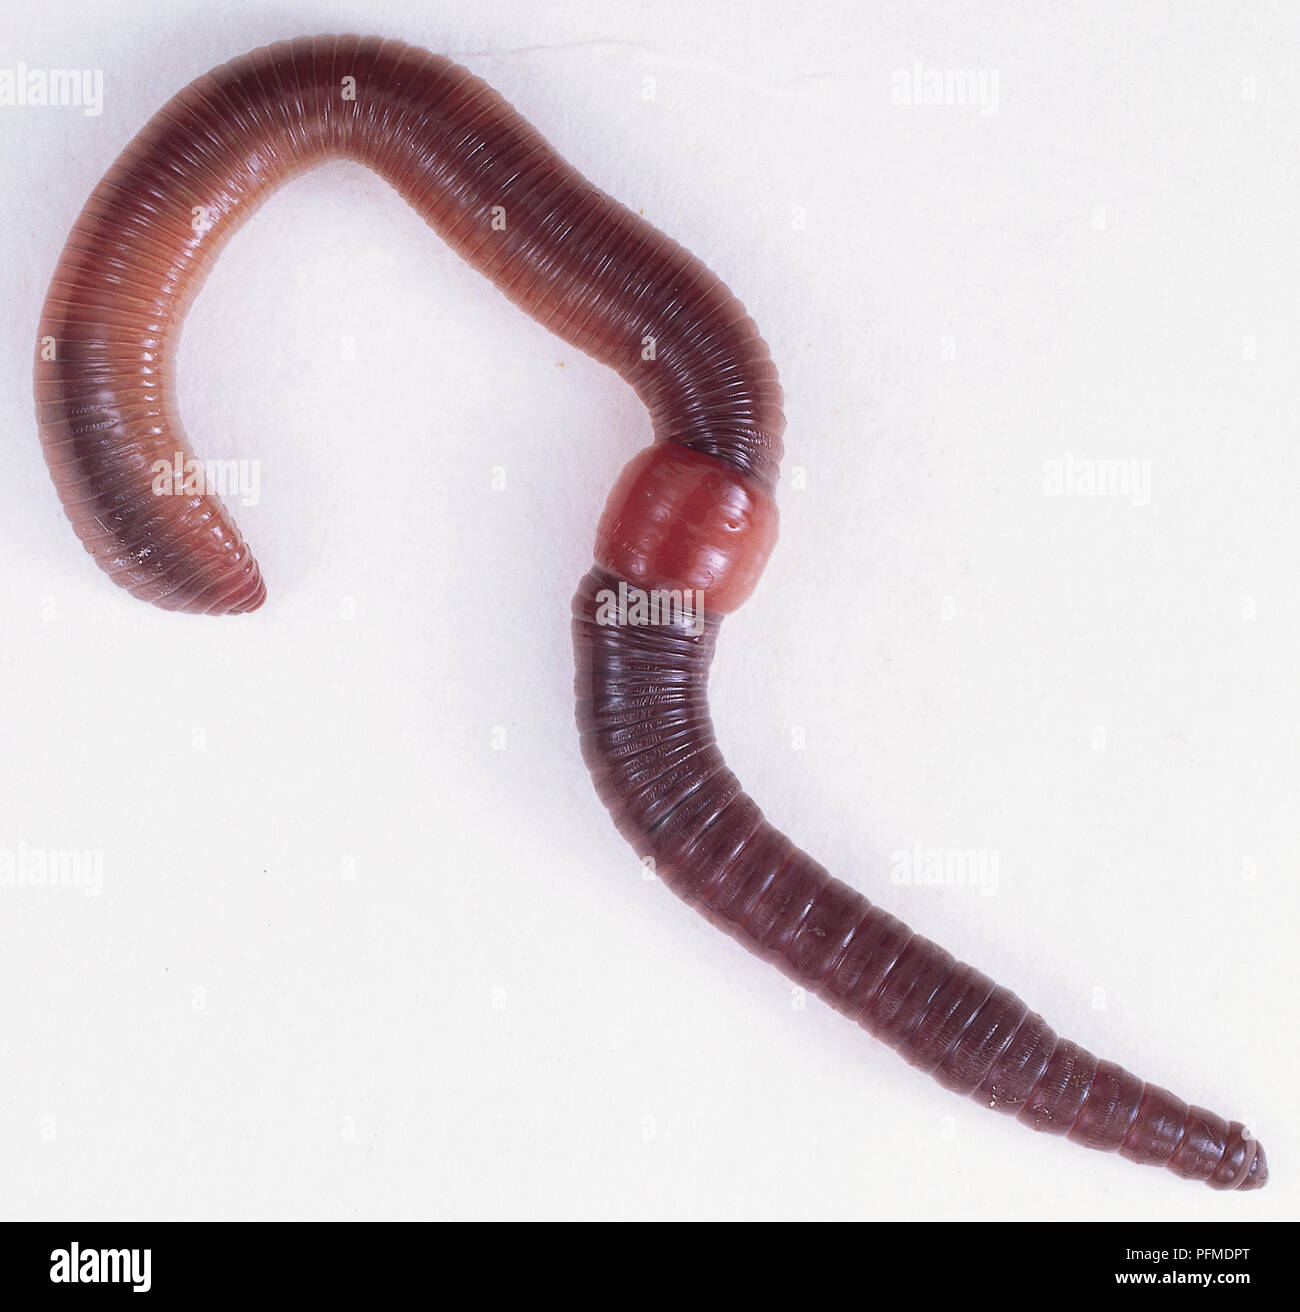 Gusano segmentado (Annelida) mostrando la sección media hinchada Foto de stock